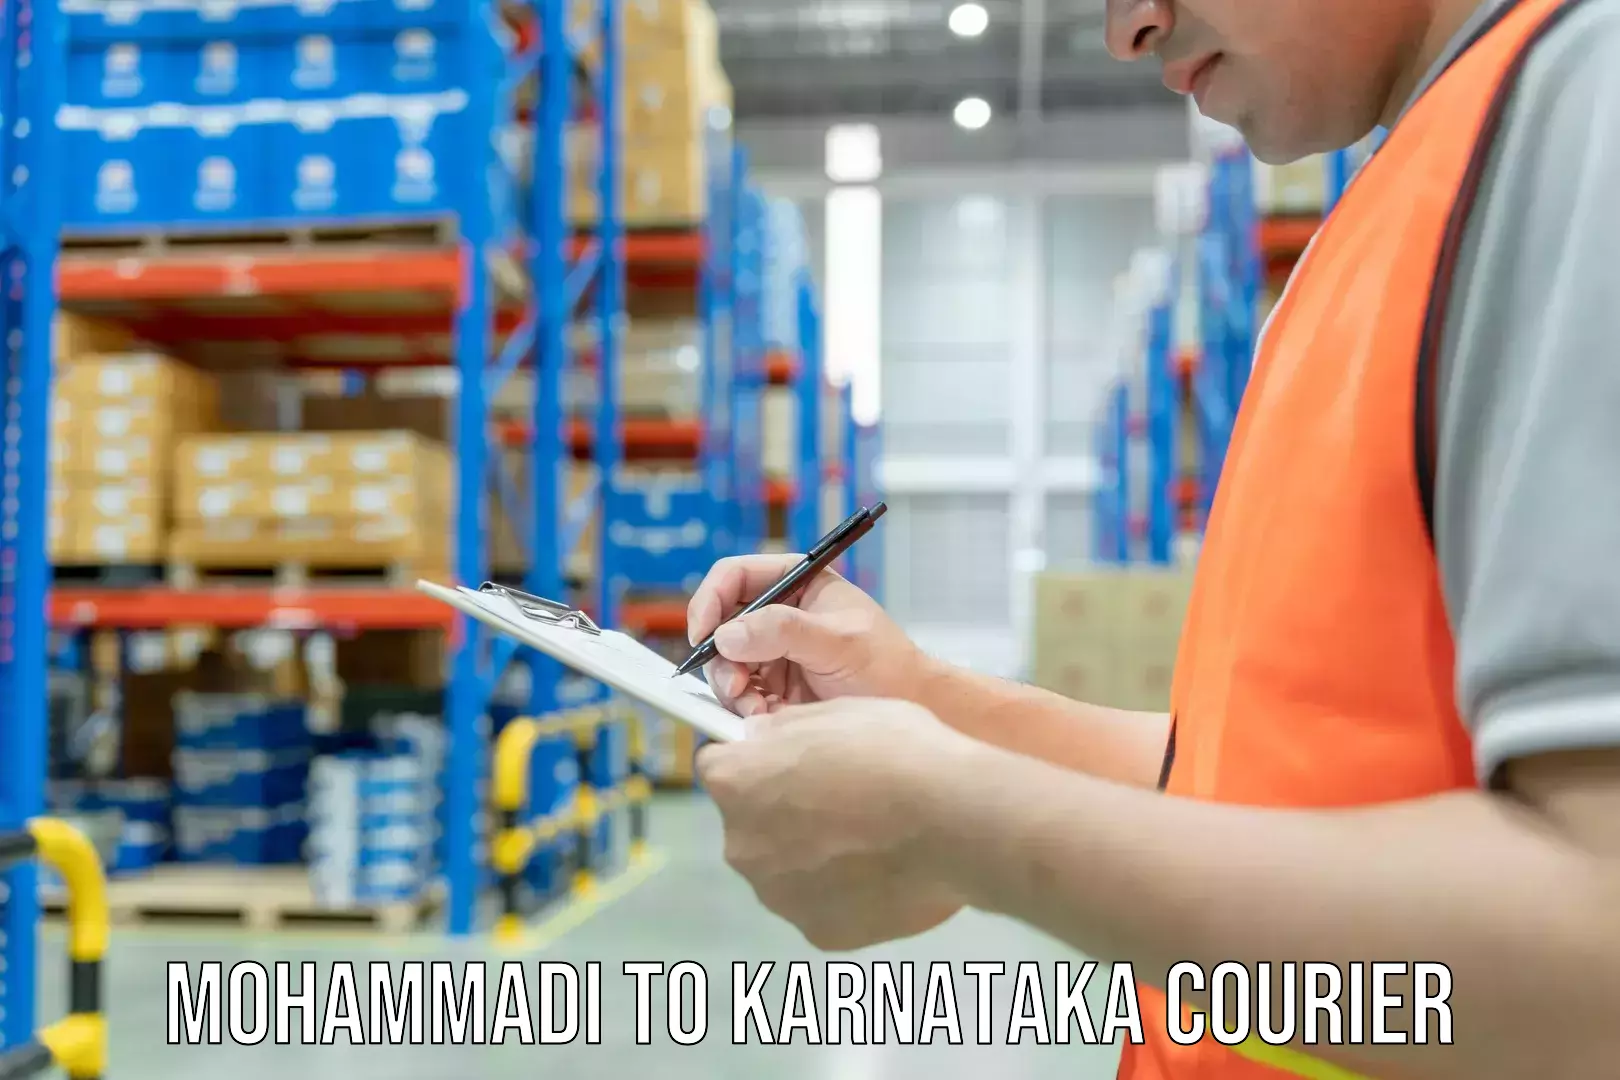 Home goods moving company Mohammadi to Karnataka